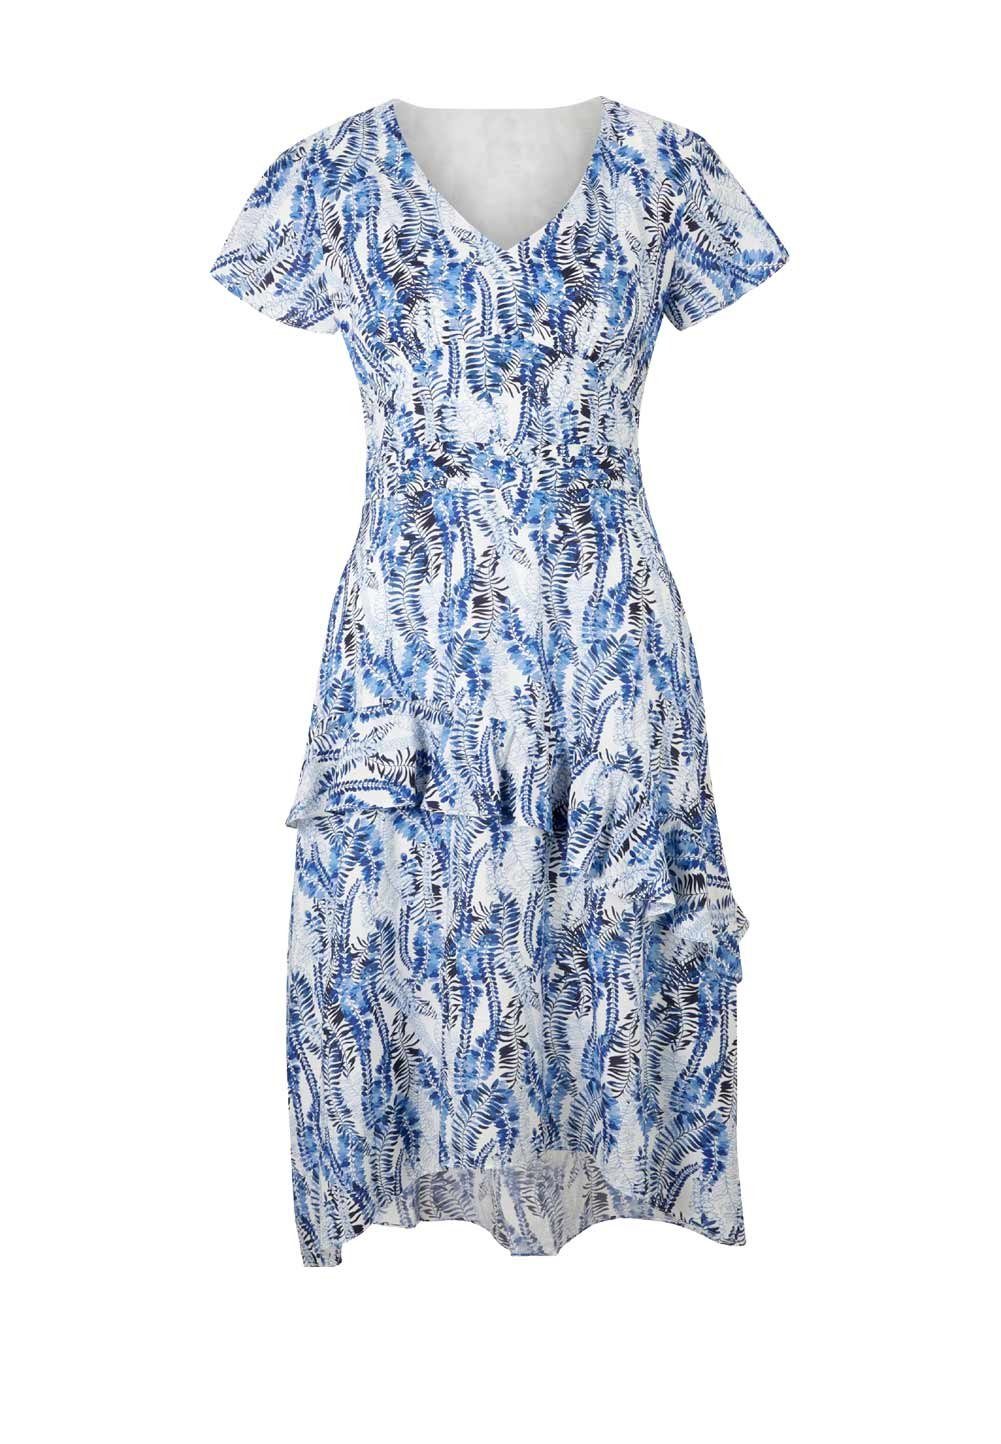 ASHLEY Damen Designer-Seidenkleid weiß-blau Shirtkleid Volants, BROOKE Brooke m. by heine Ashley